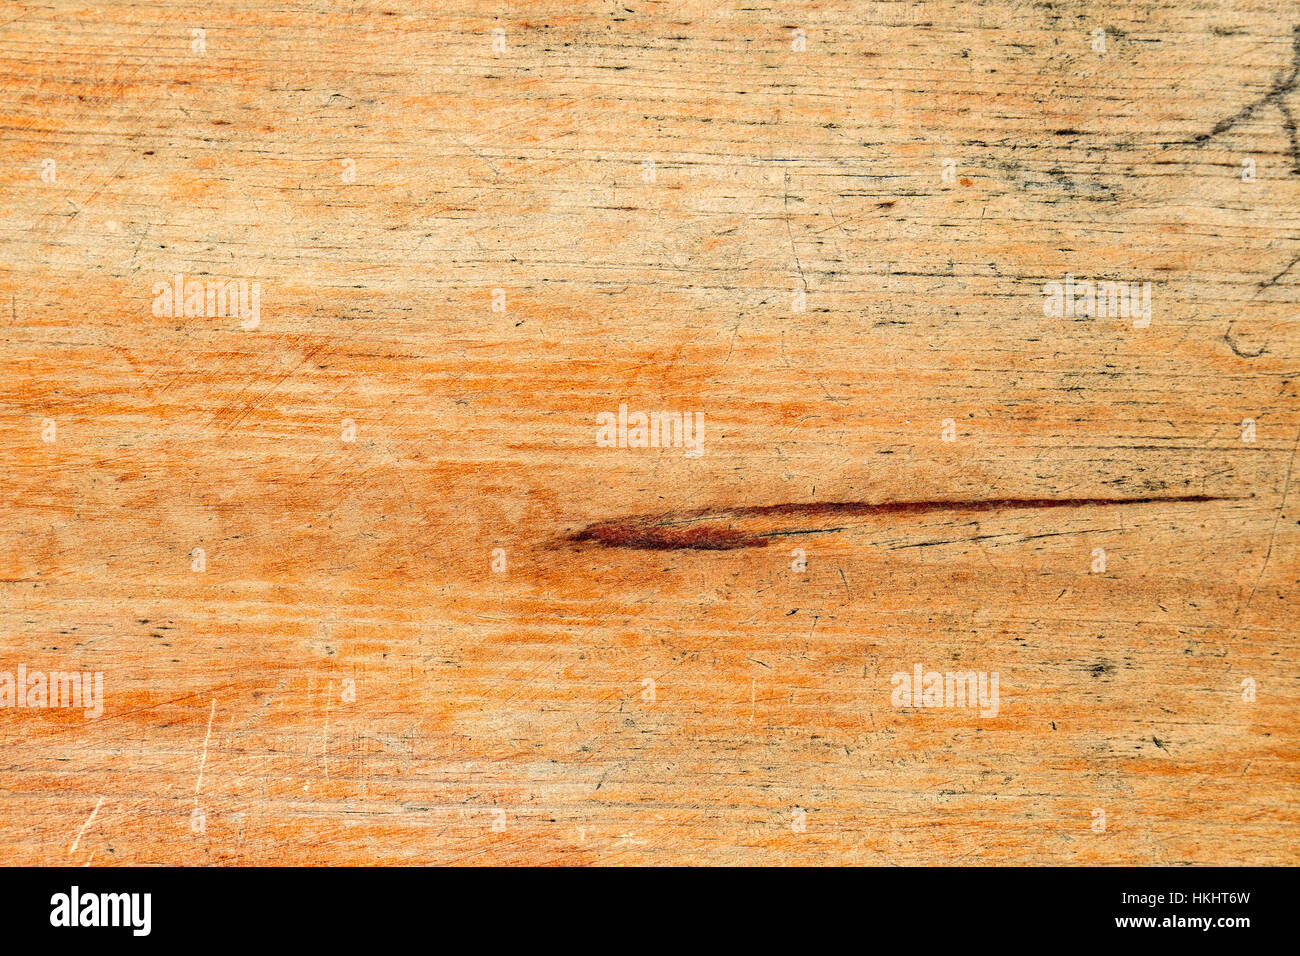 Chiudere il riempimento del telaio di un vecchio e graffiato asse di legno Foto Stock